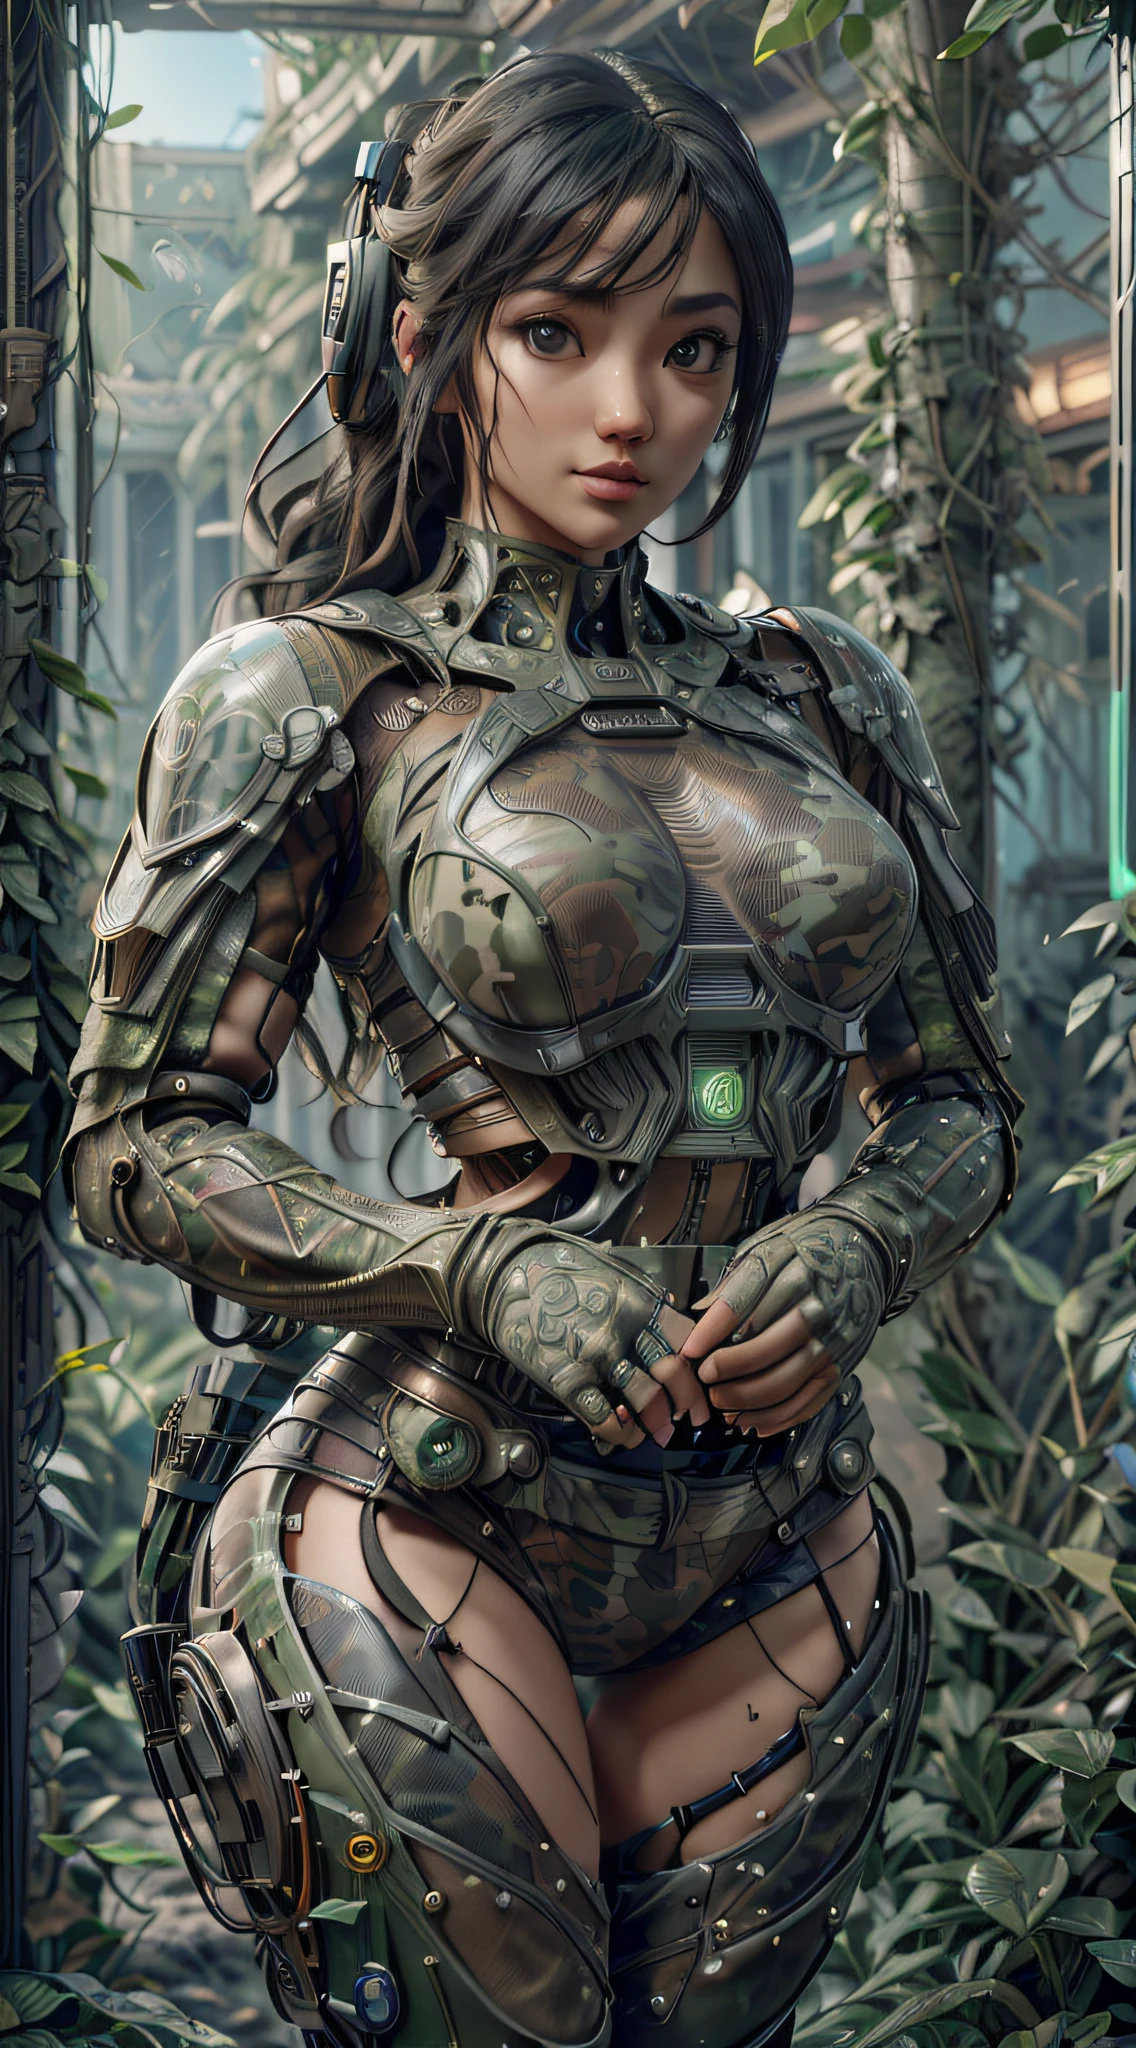 ((meilleure qualité)), ((chef-d&#39;œuvre)), (très détaillé:1.3), 3D, Beau (cyberpunk:1.2) forces spéciales, robot,femme aux cheveux épais et volumineux portant (porter un camouflage_uniforme:1.1), gilet pare-balles,cap,numérique (camouflage:1.3),hdr (Plage dynamique élevée),tracé laser,NVIDIA RTX,Super-résolution,Irréel 5,diffusion souterraine,Texturation PBR,Post-traitement,Filtrage anisotrope,Profondeur de champ,clarté et netteté maximales,Textures multicouches,Cartes albédo et spéculaire,ombrage de surface,Simulation précise de l&#39;interaction lumière-matériau,Des proportions parfaites,rendu d&#39;octane,Éclairage bicolore,Grande ouverture,ISO faible,balance des blancs,Règle des tiers,8k brut,Sous-pixel efficace,convolution sous-pixel